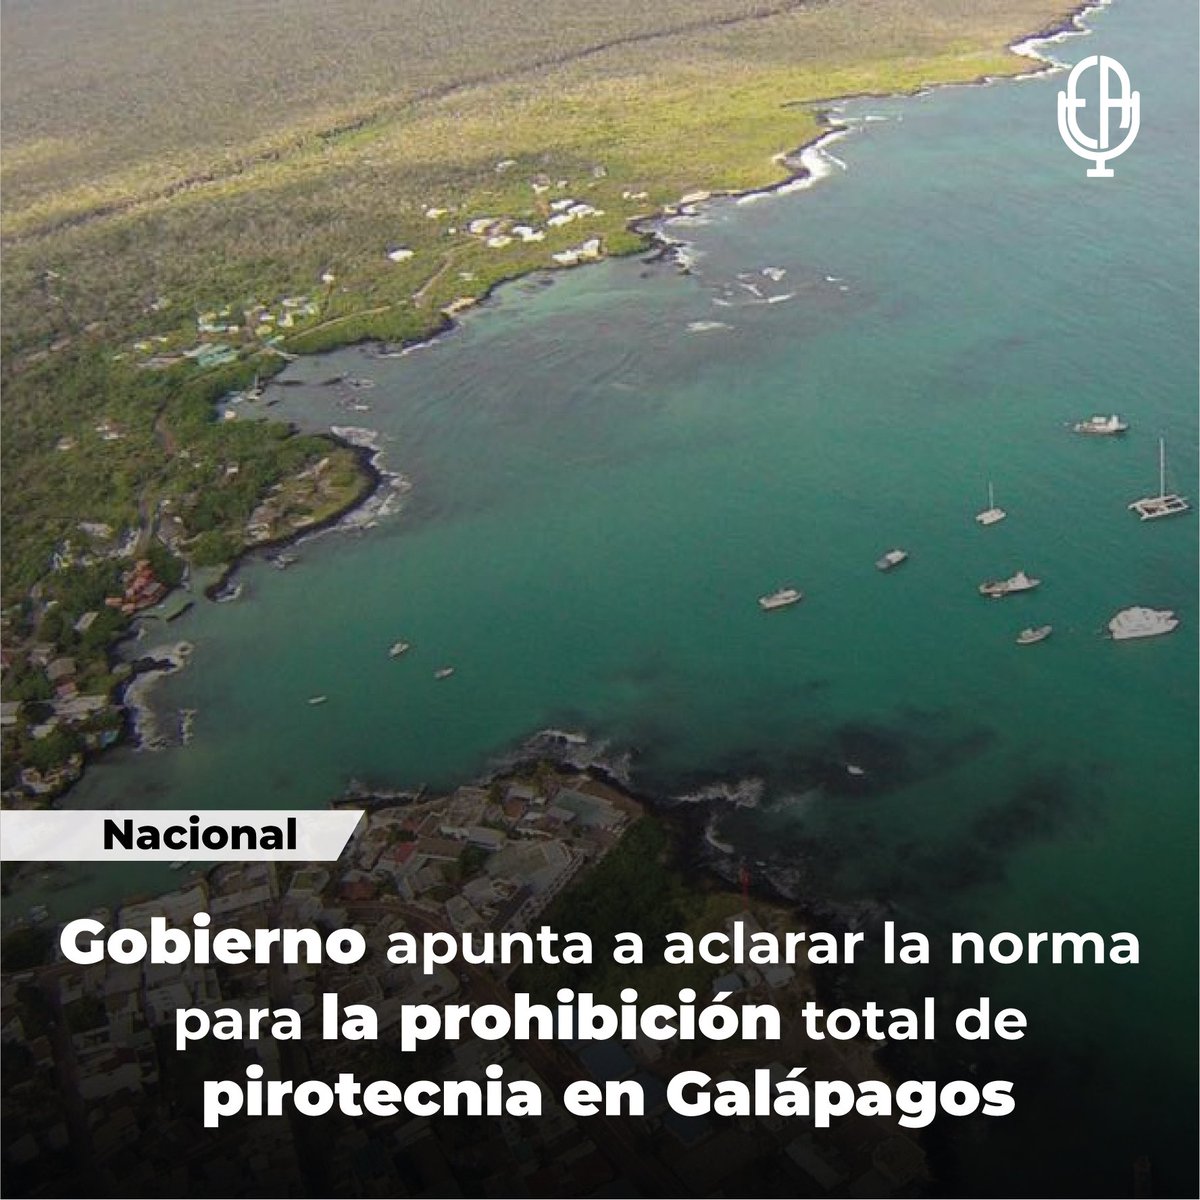 ** NACIONAL **
El #Ministerio de #Ambiente impulsará la prohibición total de la pirotecnia en las Islas #Galápagos. La ministra #SadeFritschi coordinó con el Consejo de Gobierno de Galápagos la decisión irrevocable de “proponer y abogar” esa iniciativa.